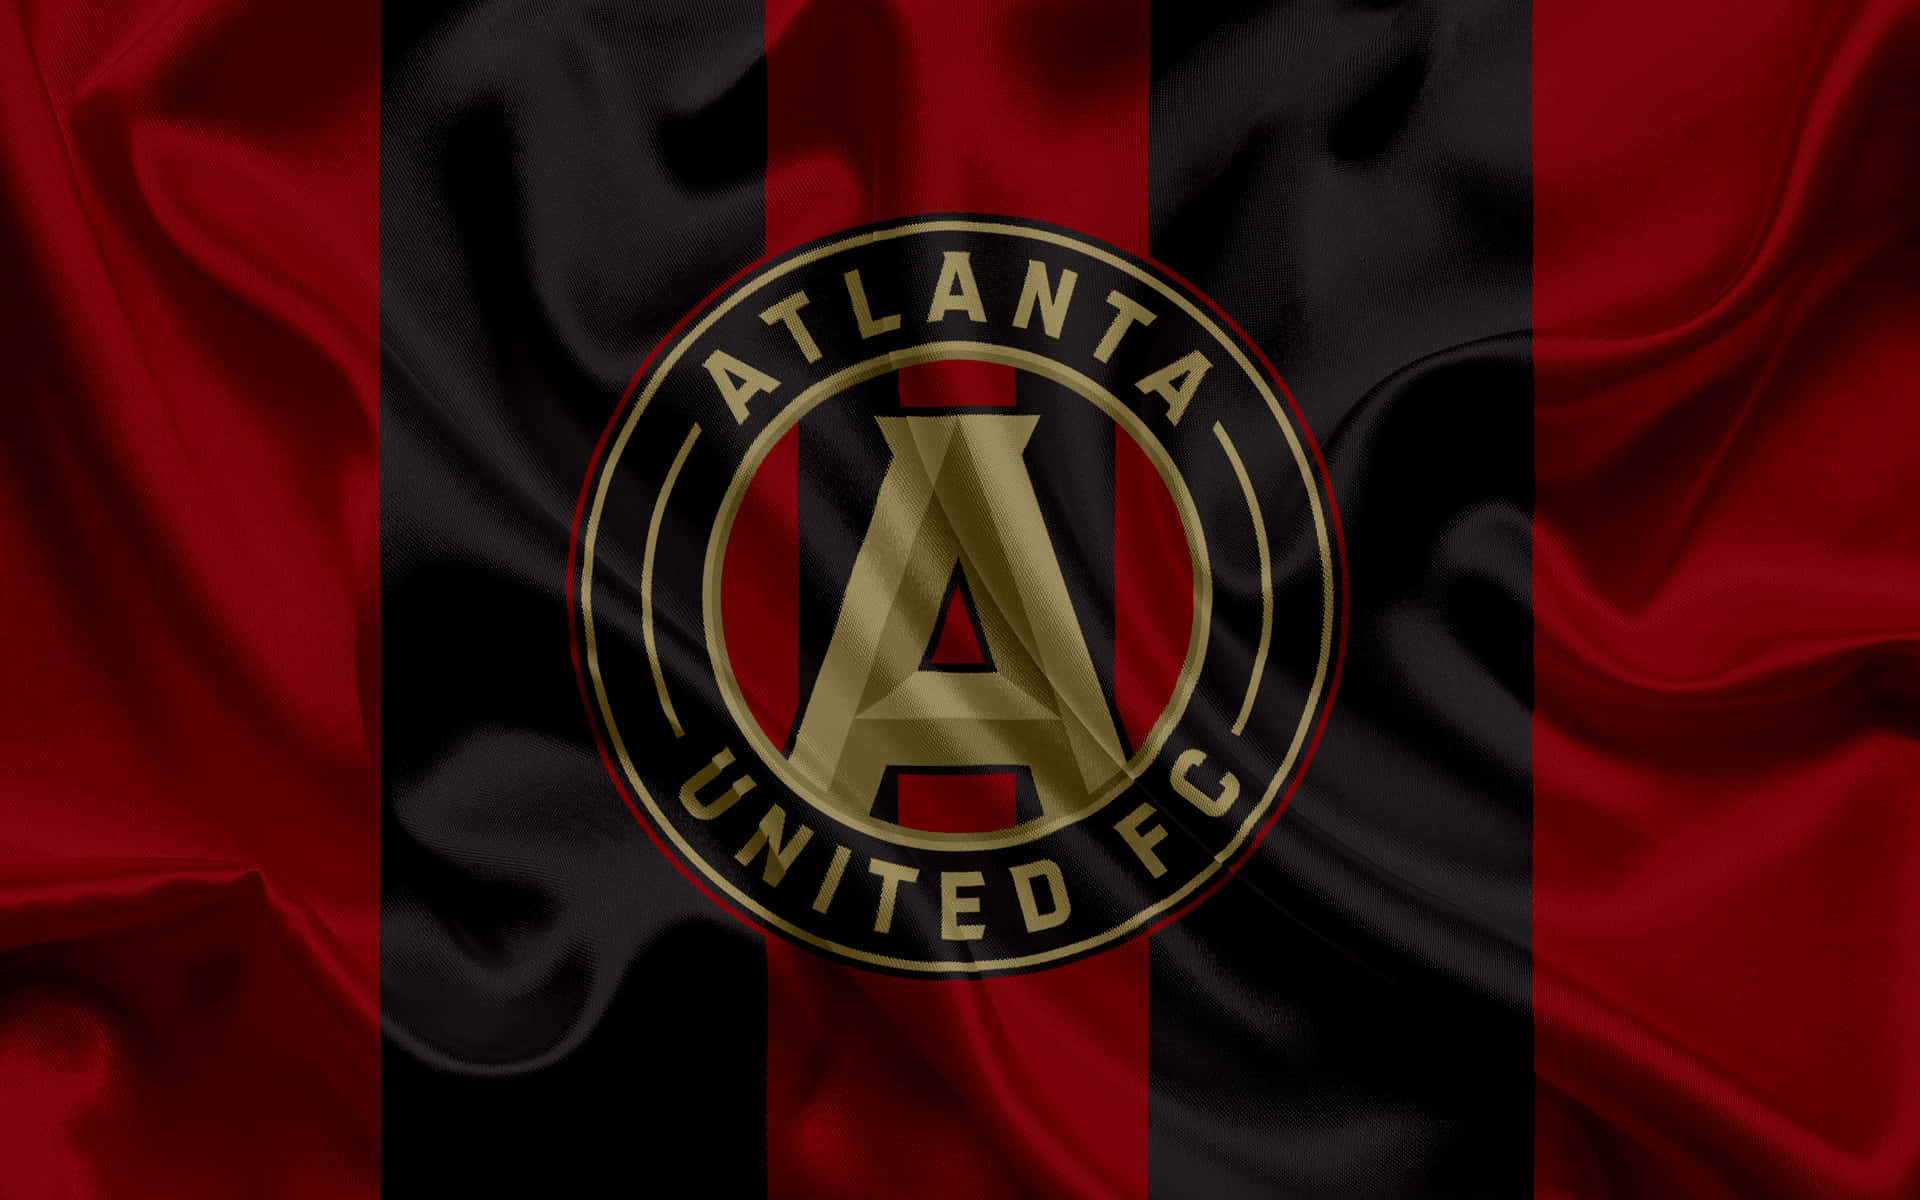 Bandeirado Atlanta United Fc, Um Clube Profissional De Futebol Americano. Papel de Parede